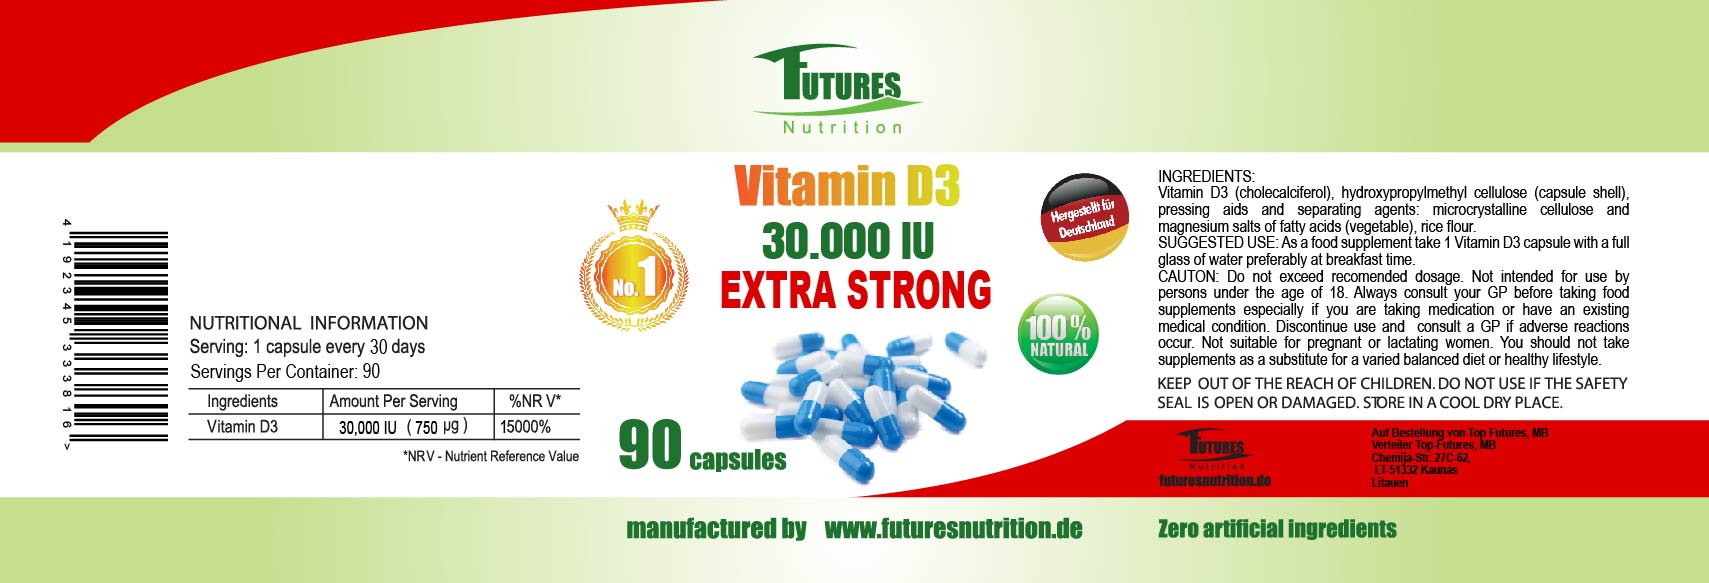 10 x Vitamin D3 30,000 I.E 900 capsules